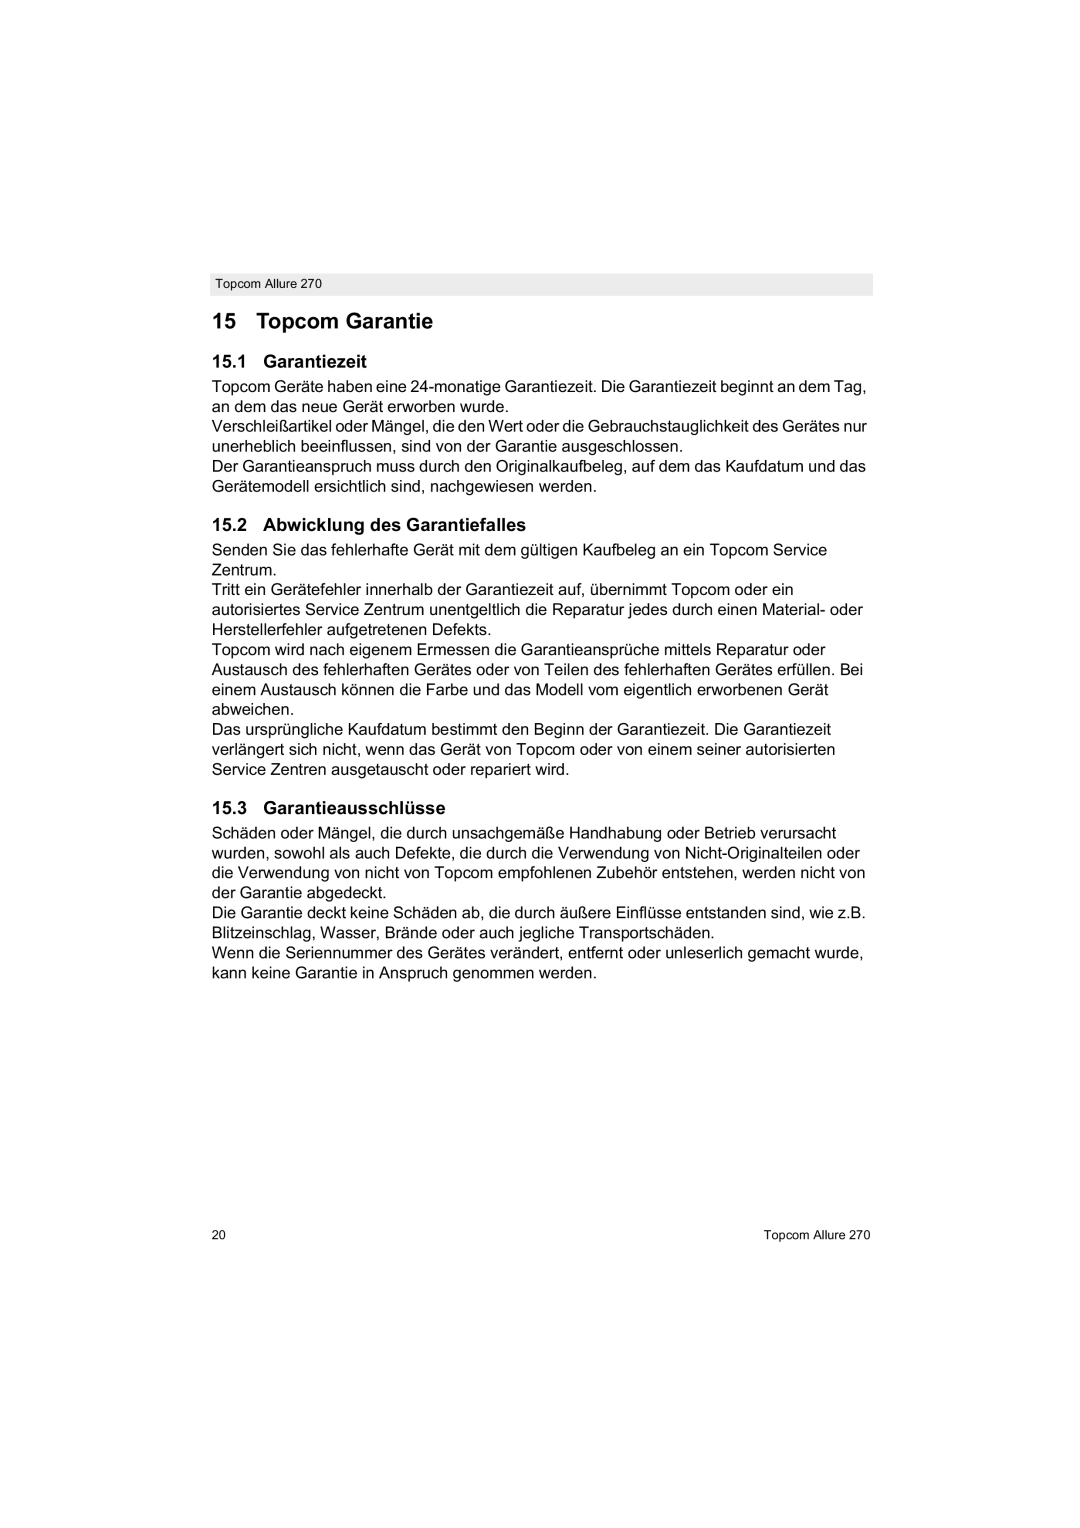 Topcom 270 manual Topcom Garantie, Garantiezeit, Abwicklung des Garantiefalles, Garantieausschlüsse 